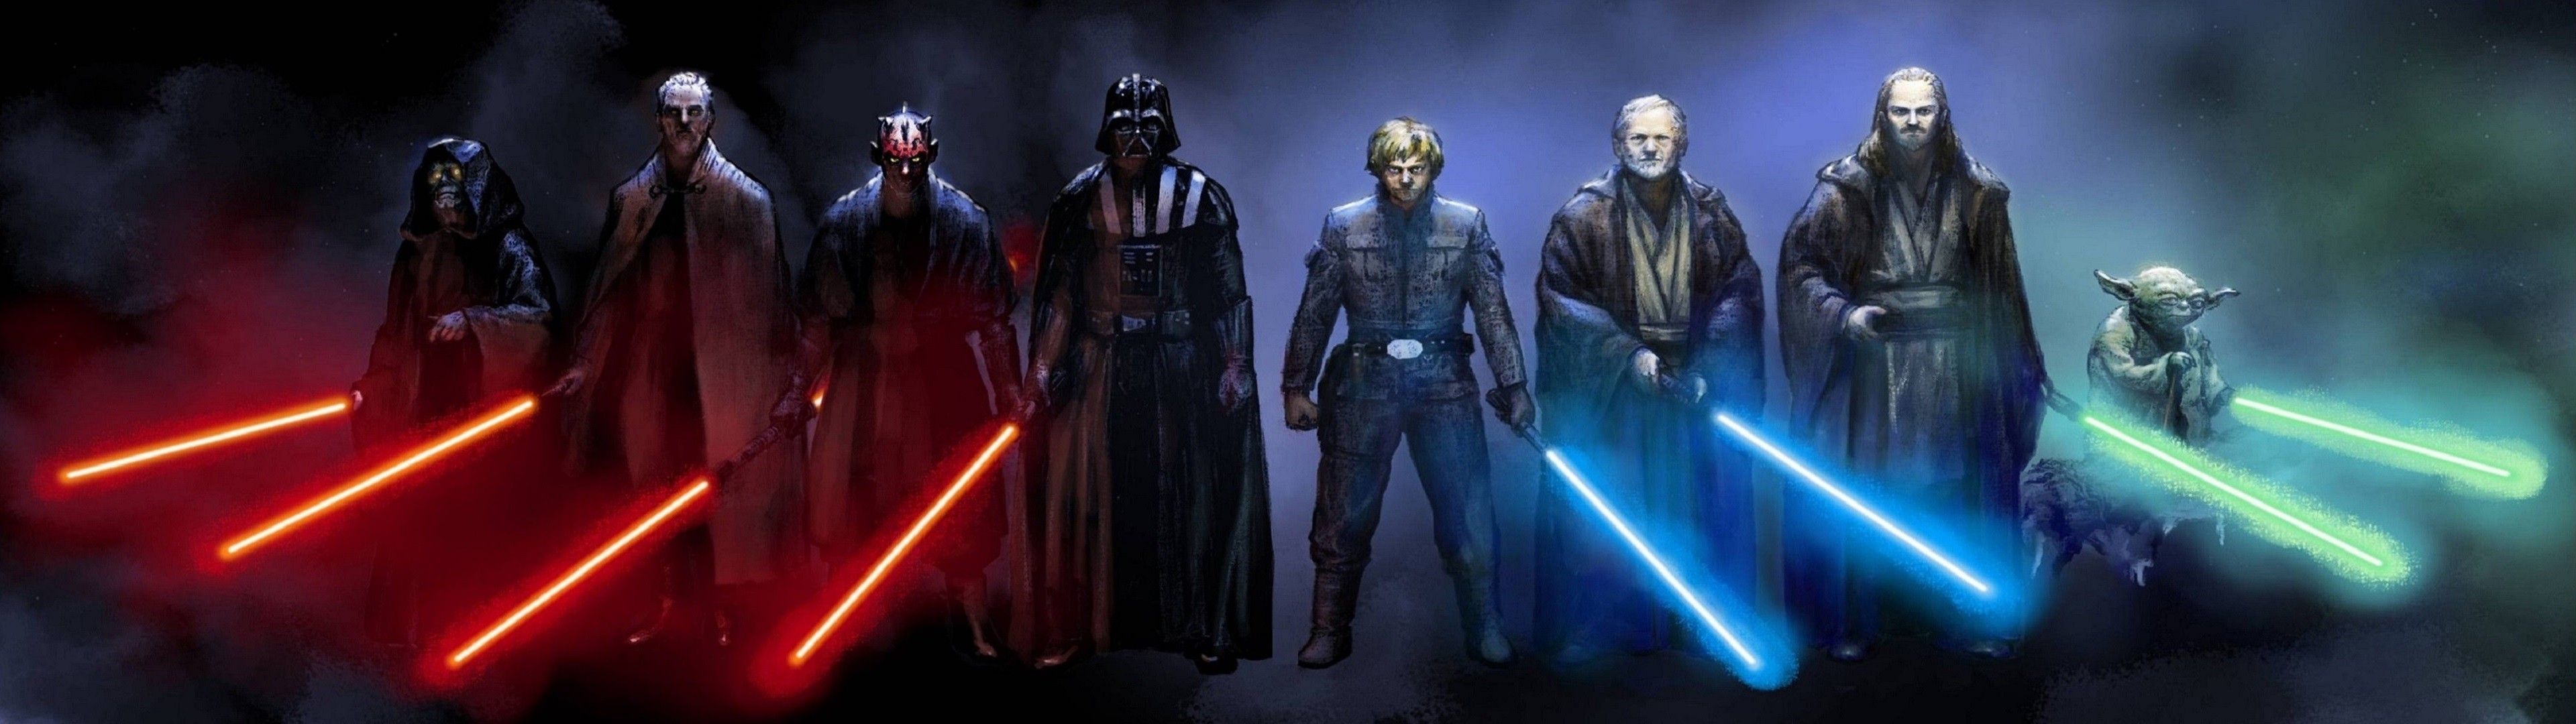 #lightsaber, #Darth Vader, #Luke Skywalker, #Star Wars, #Obi Wan Kenobi, Wallpaper. Mocah HD Wallpaper